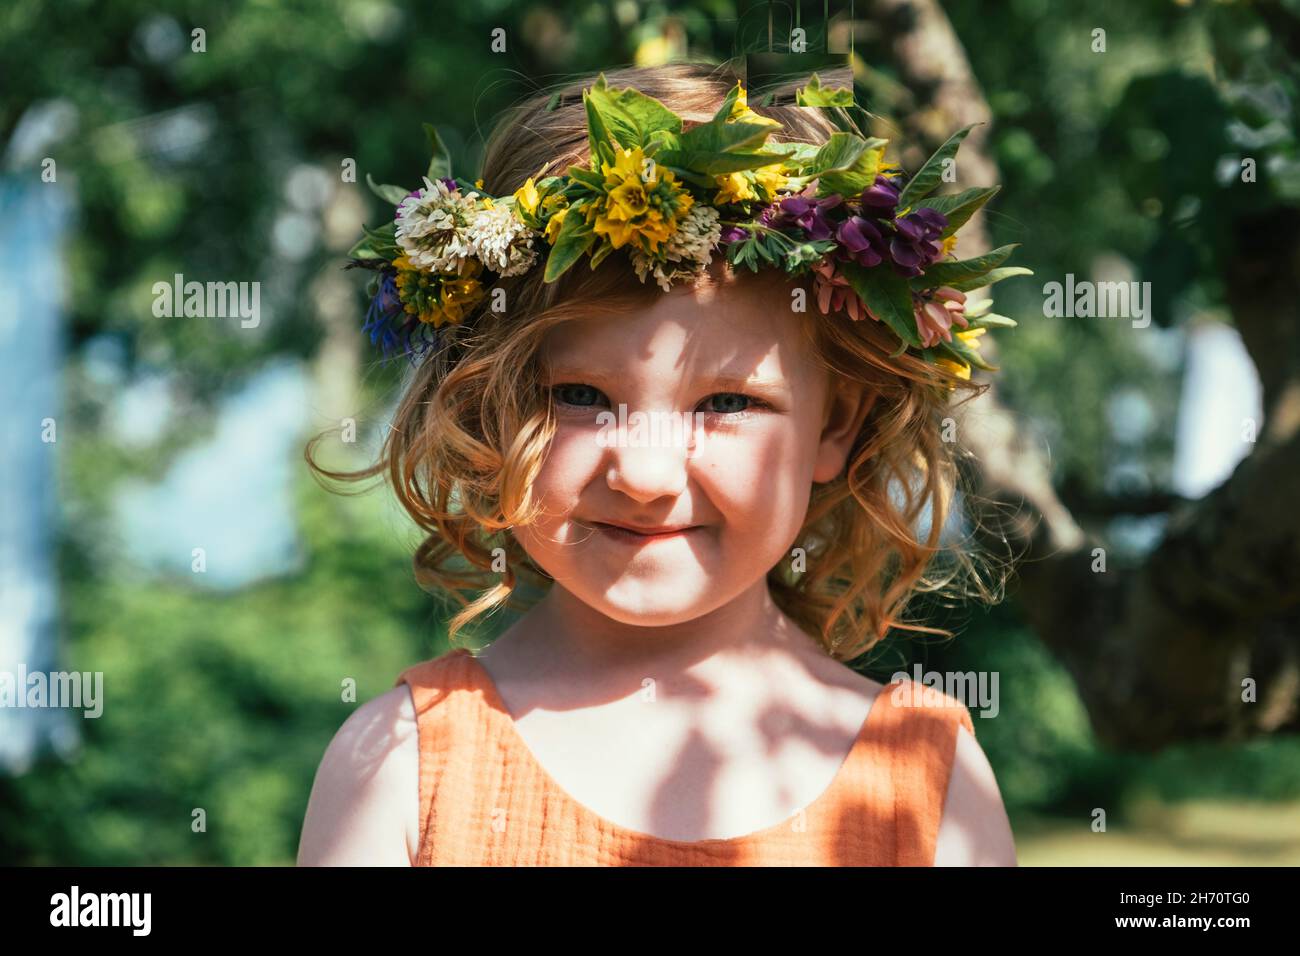 Porträt eines Mädchens im Blumenkranz Stockfoto